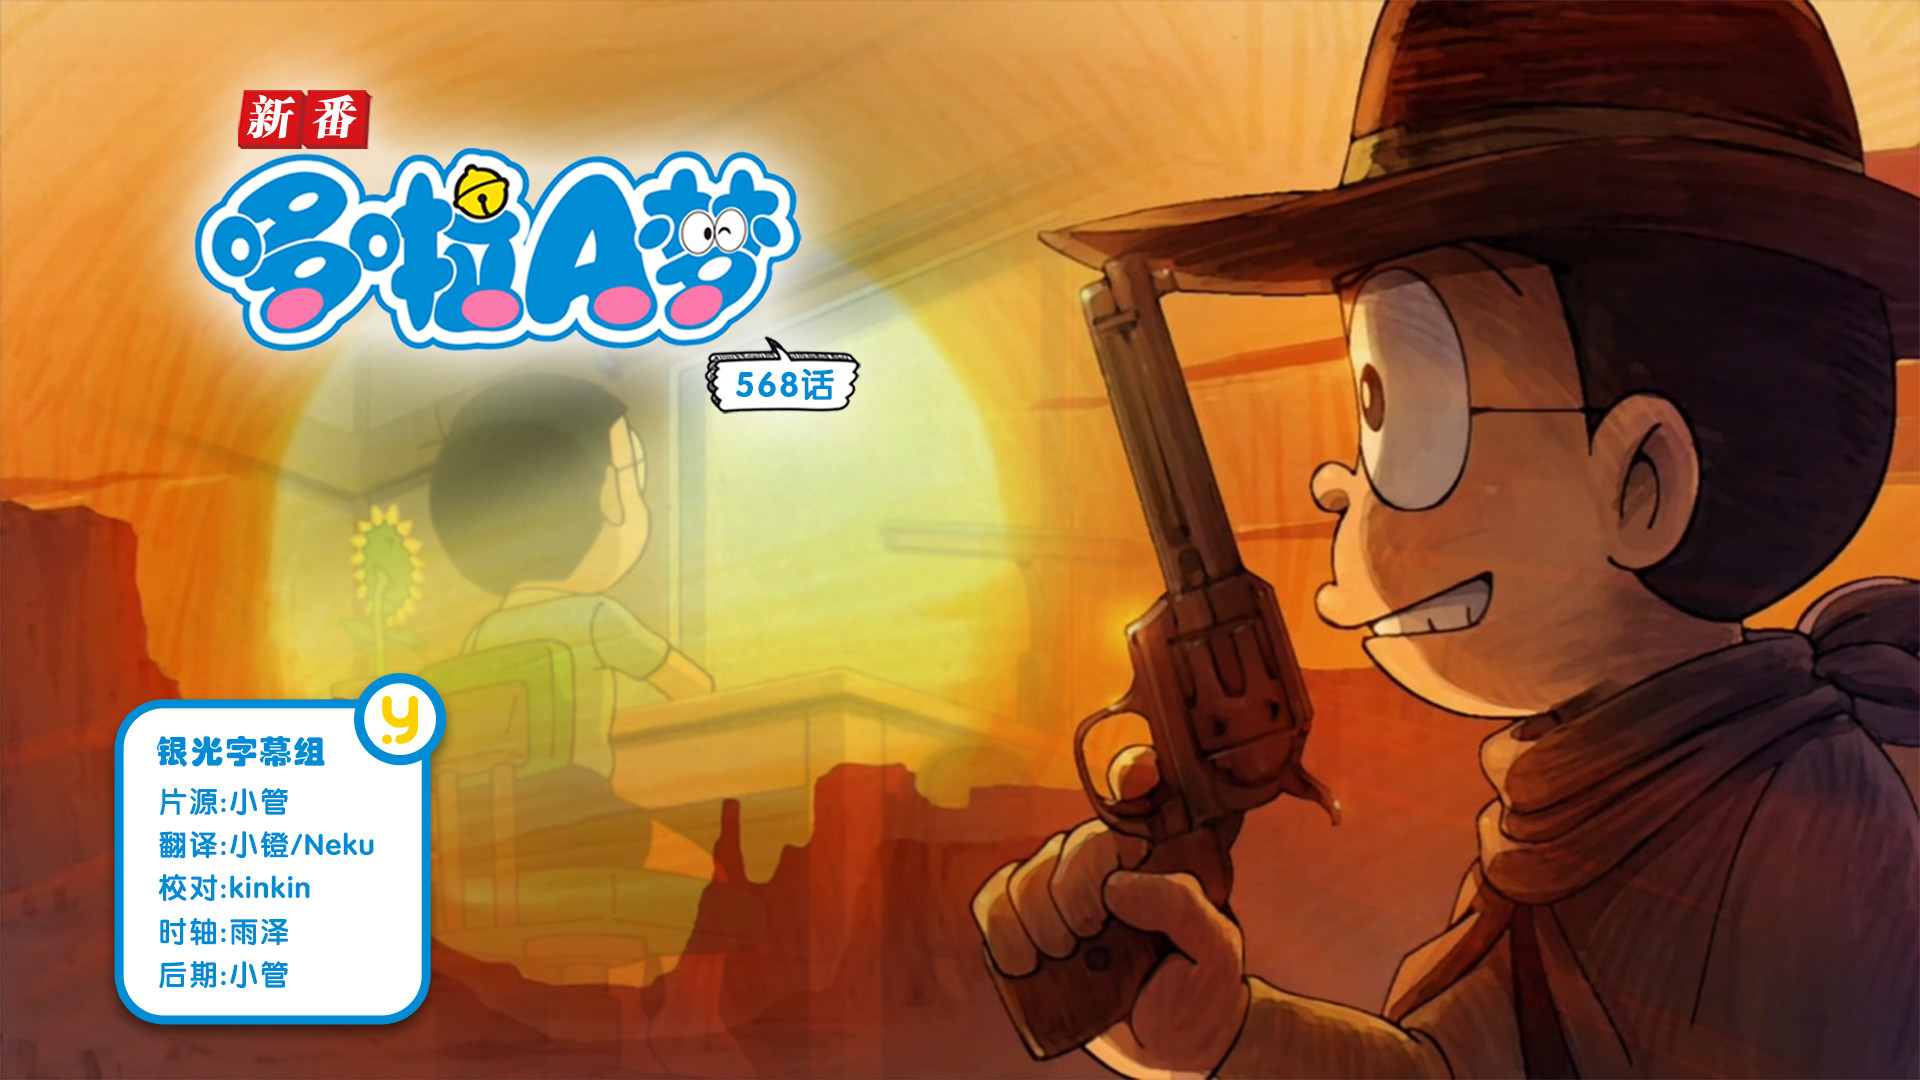 [银光字幕组][哆啦A梦新番Doraemon][2019.08.02][568]大恐慌！大雄的向日葵日记&枪王竞赛[HDRip][X264-AAC][720P][MP4]插图icecomic动漫-云之彼端,约定的地方(´･ᴗ･`)